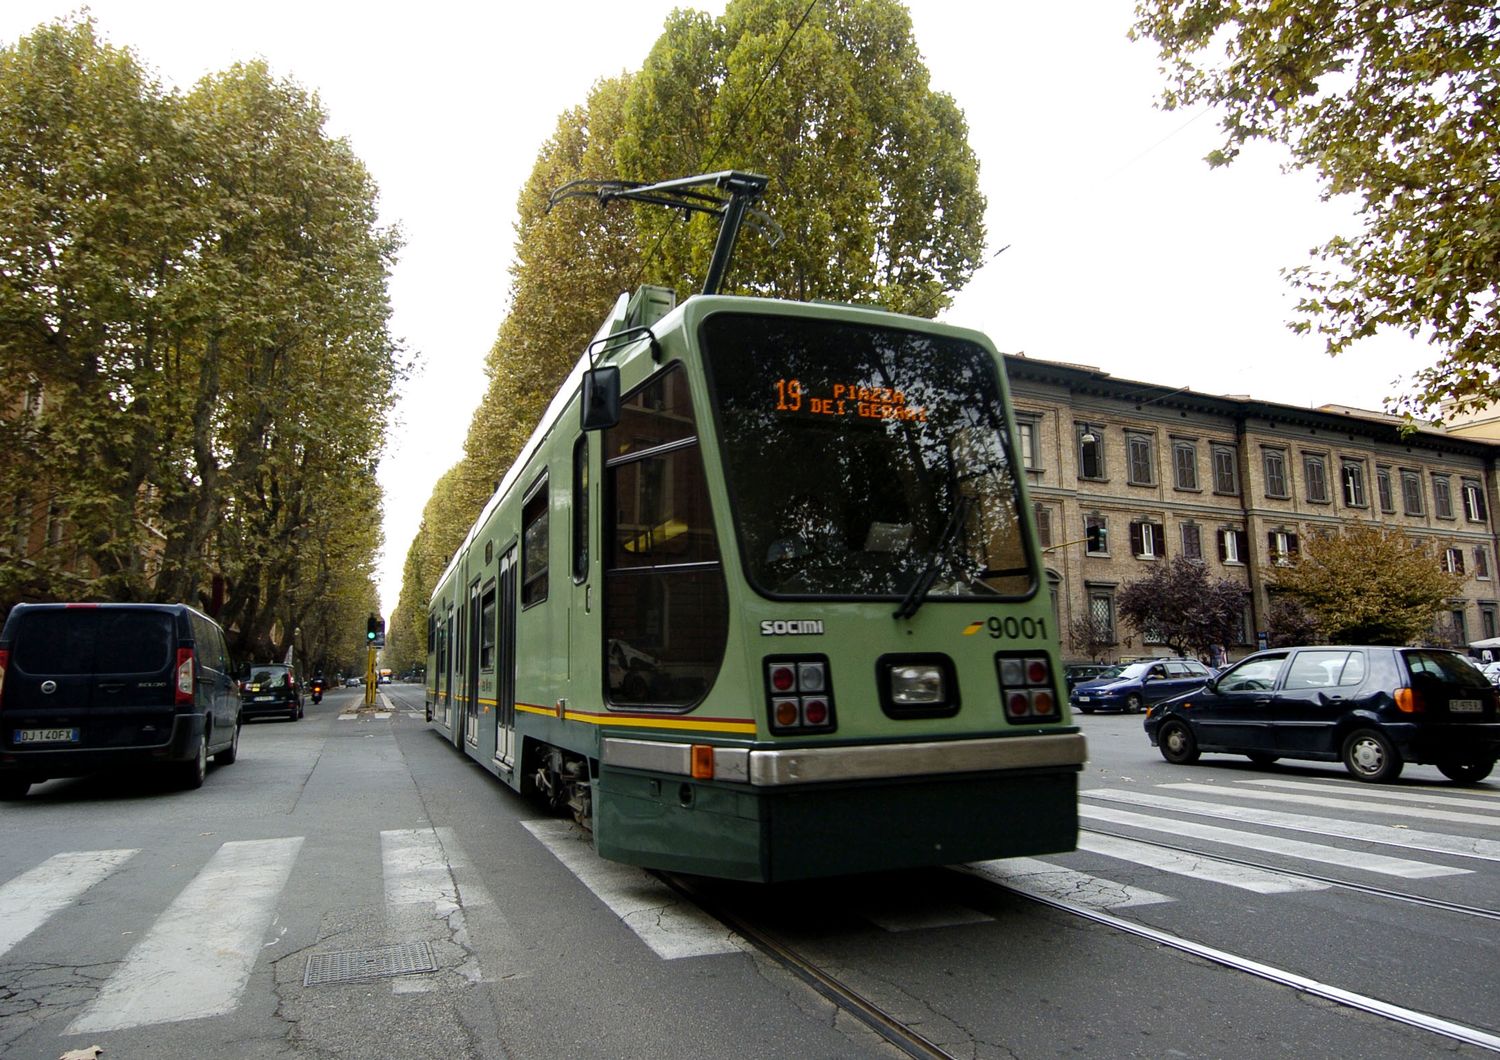 Un tram della linea 19 a Roma